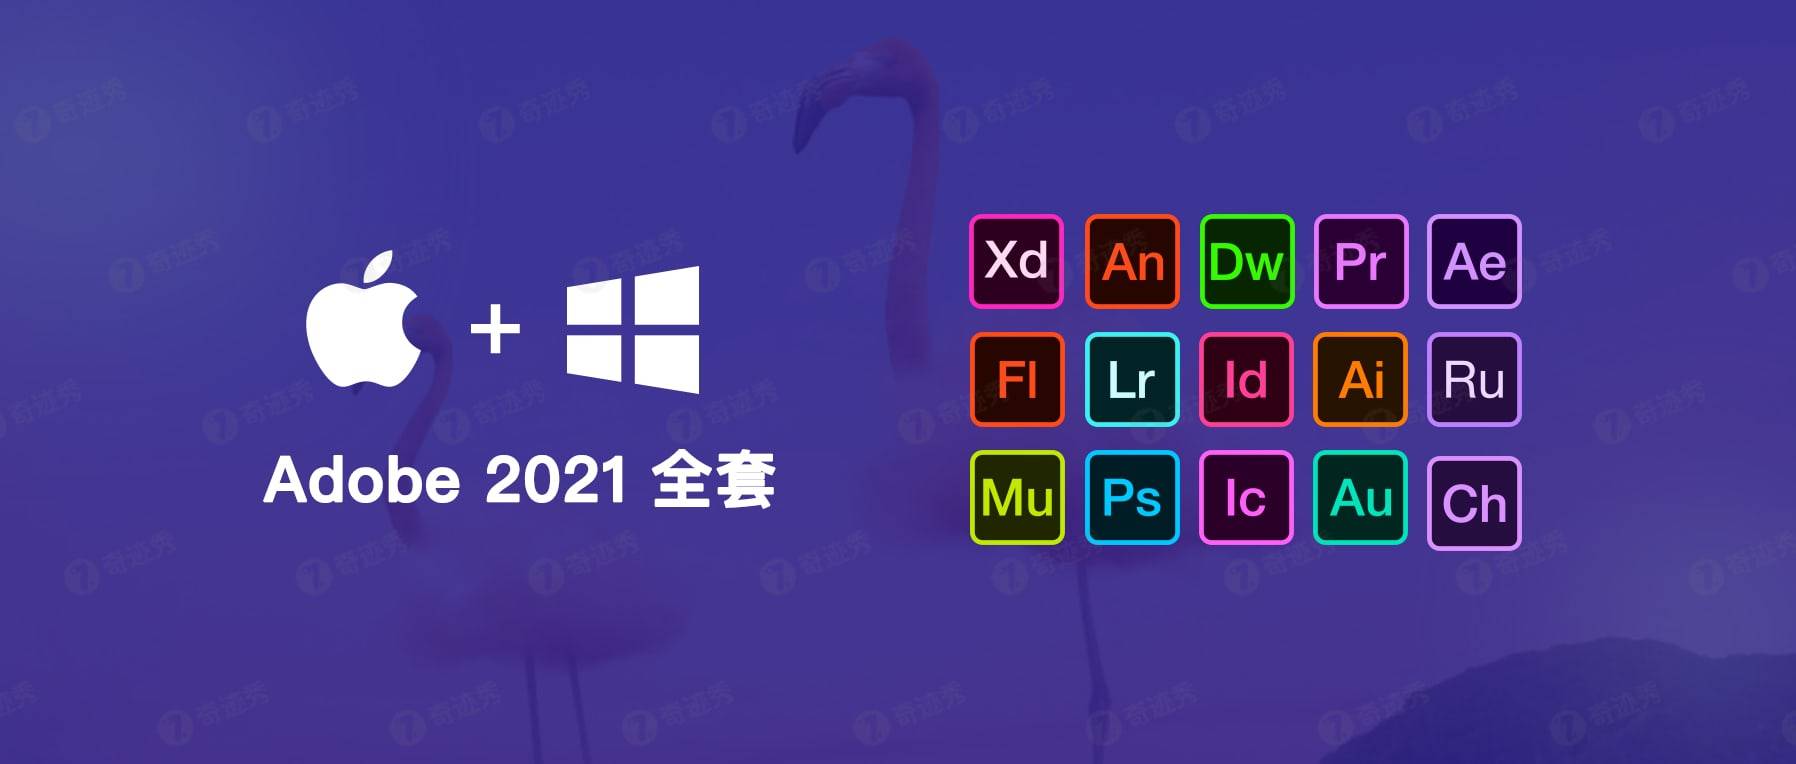 Adobe 2021 M1专用 整套插图